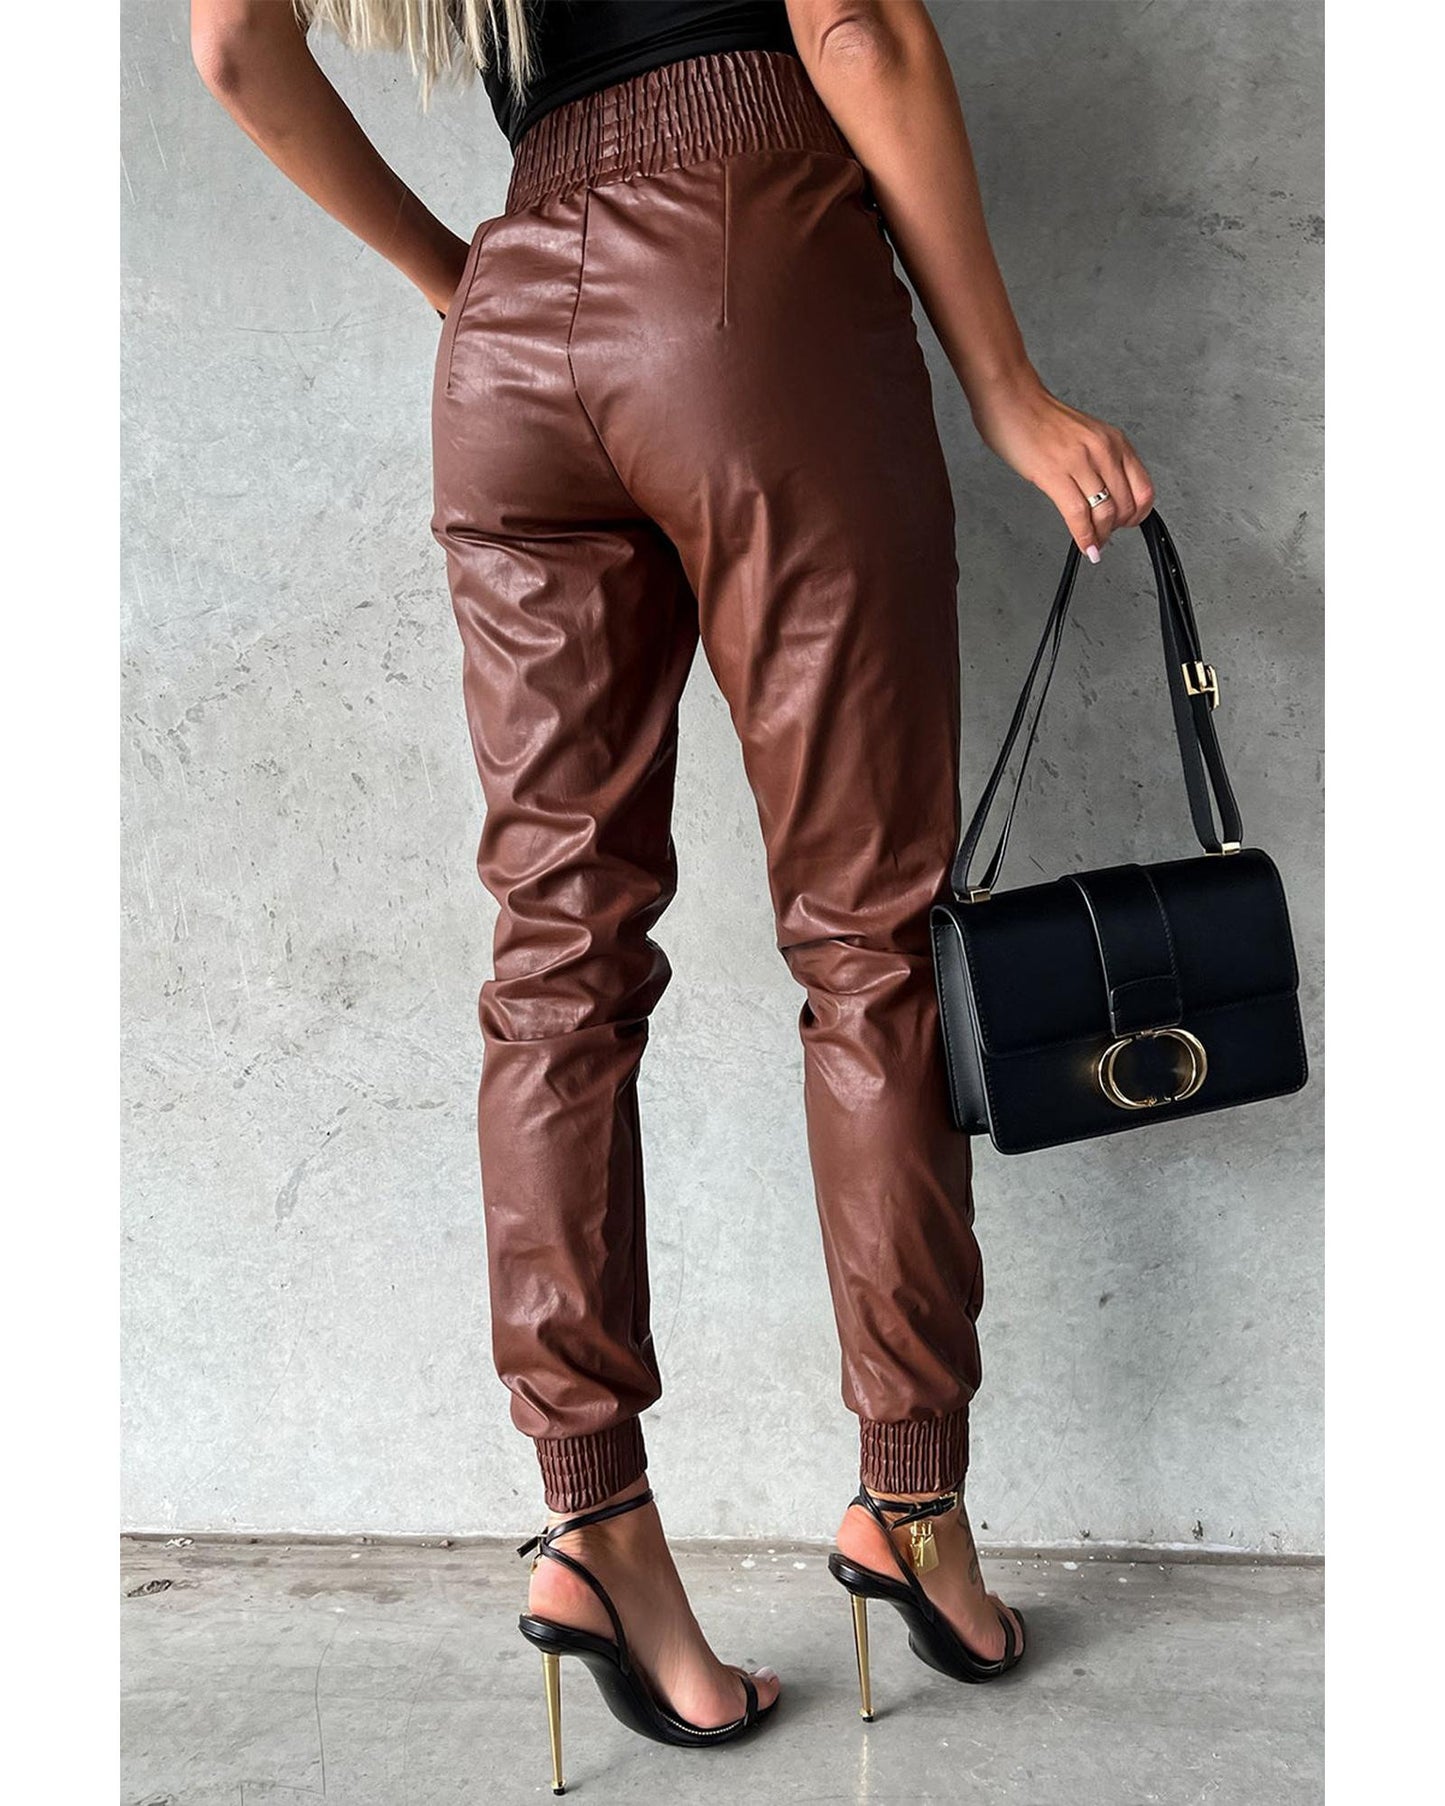 Azura Exchange Smocked High-Waist Leather Skinny Pants - XL